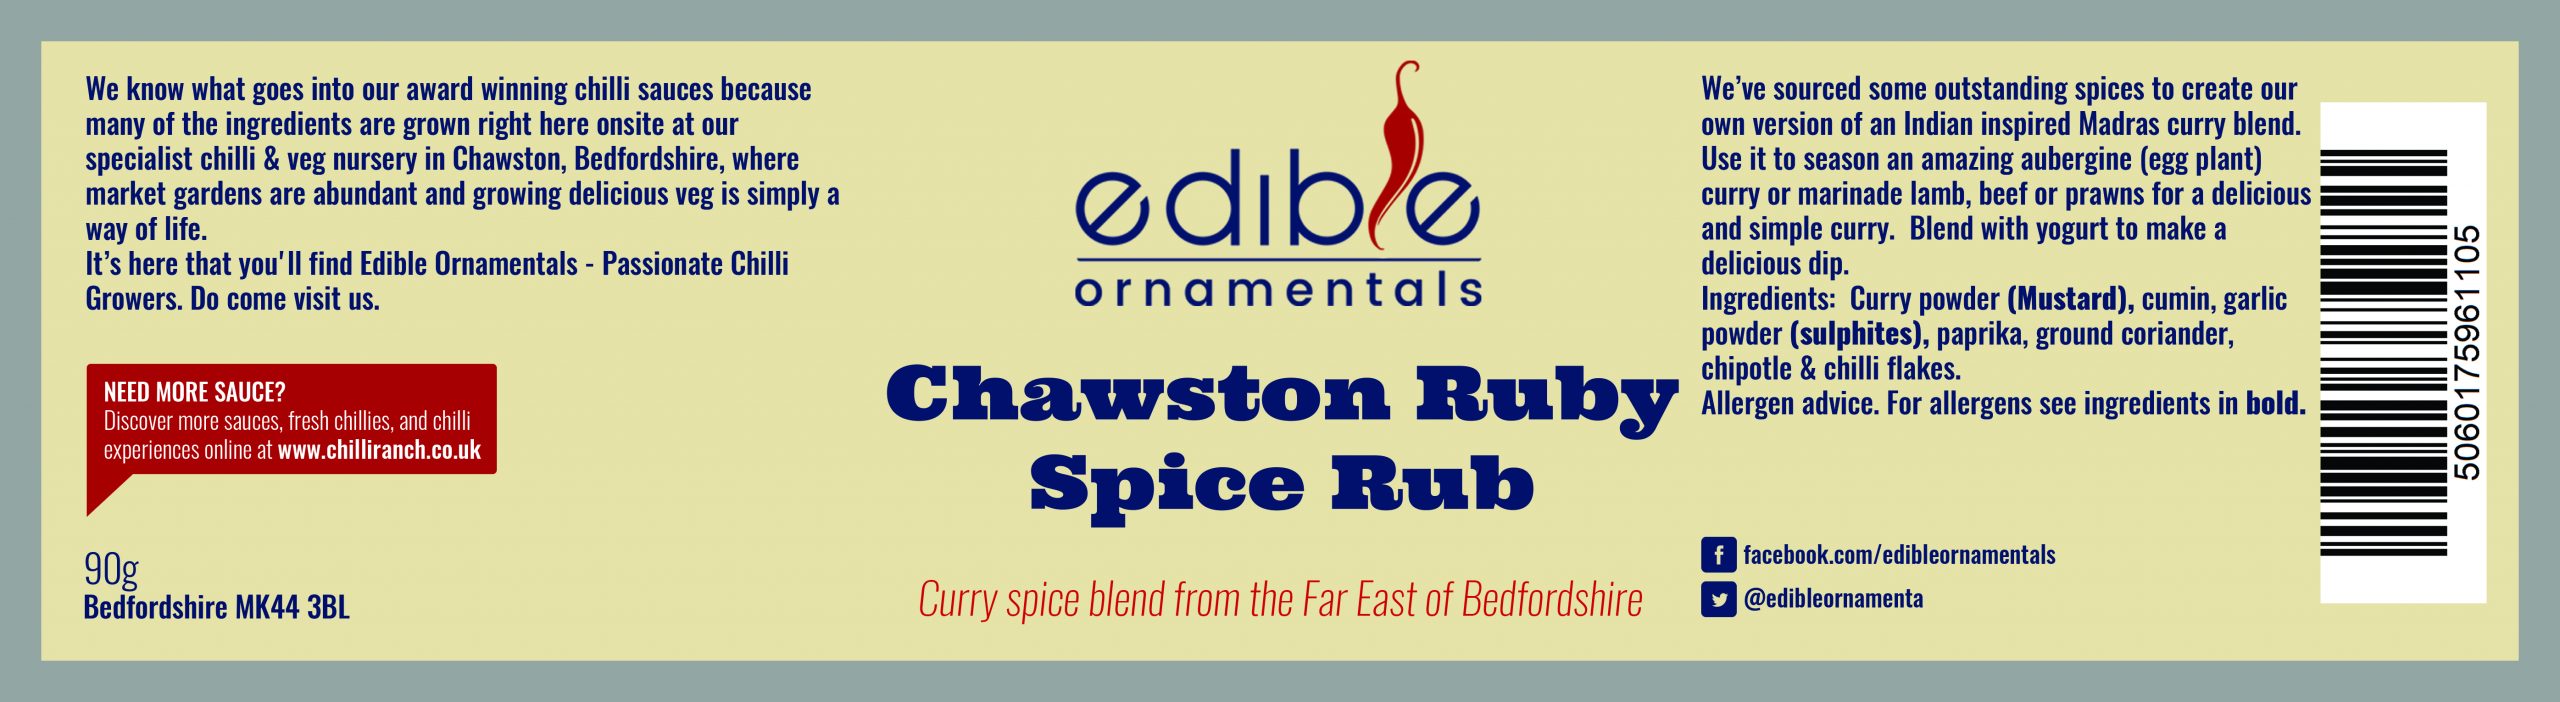 Chawston Ruby